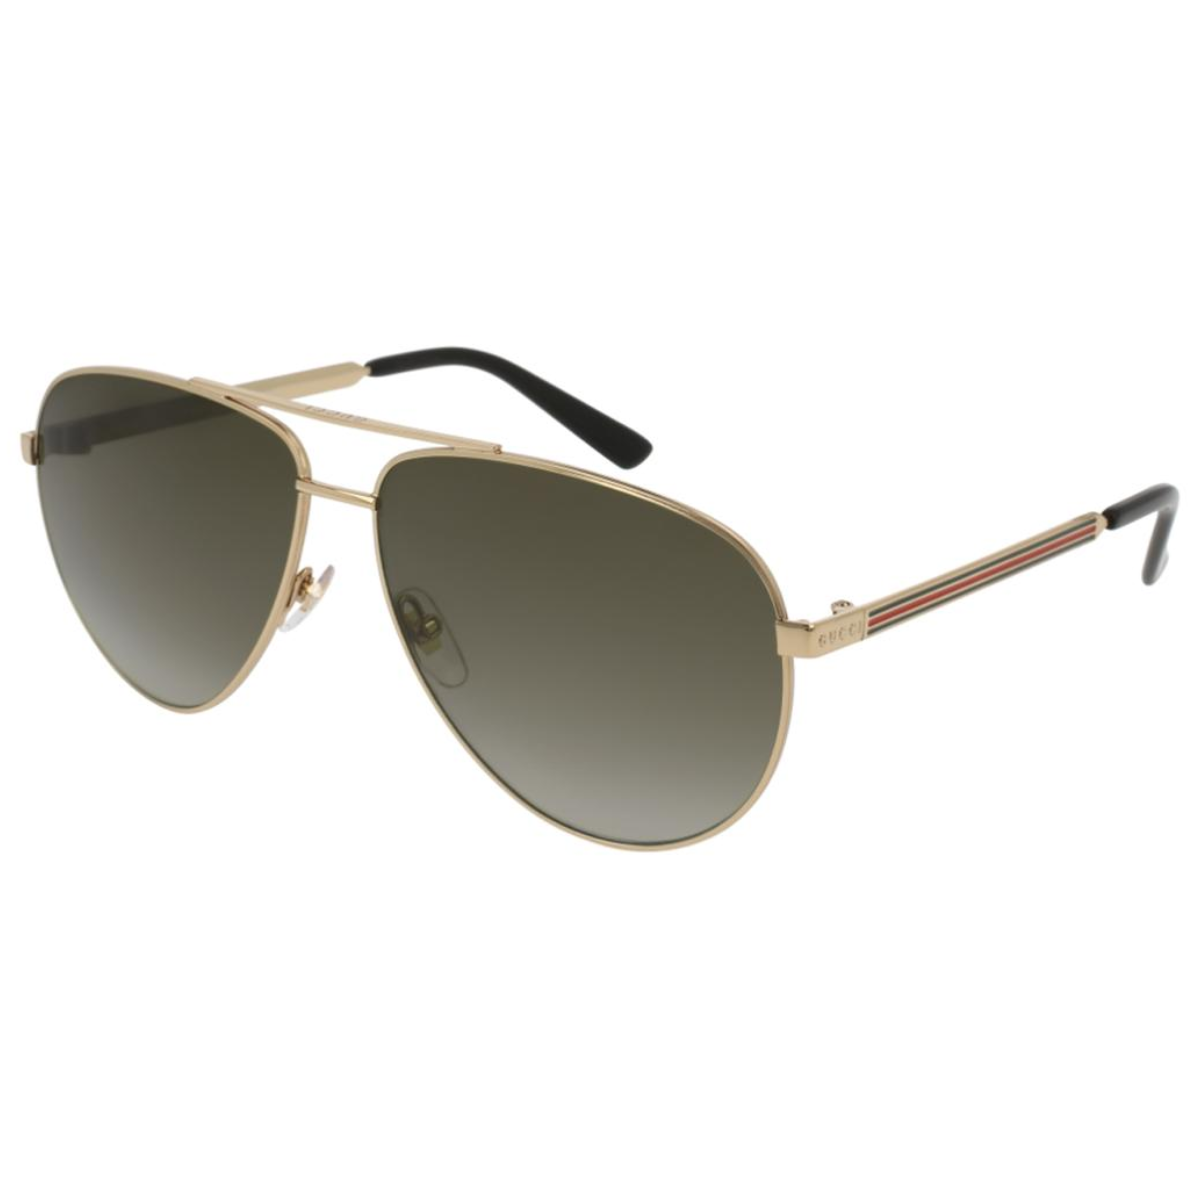 "Stylish Gucci Sunglasses: Model 0137S for Men"